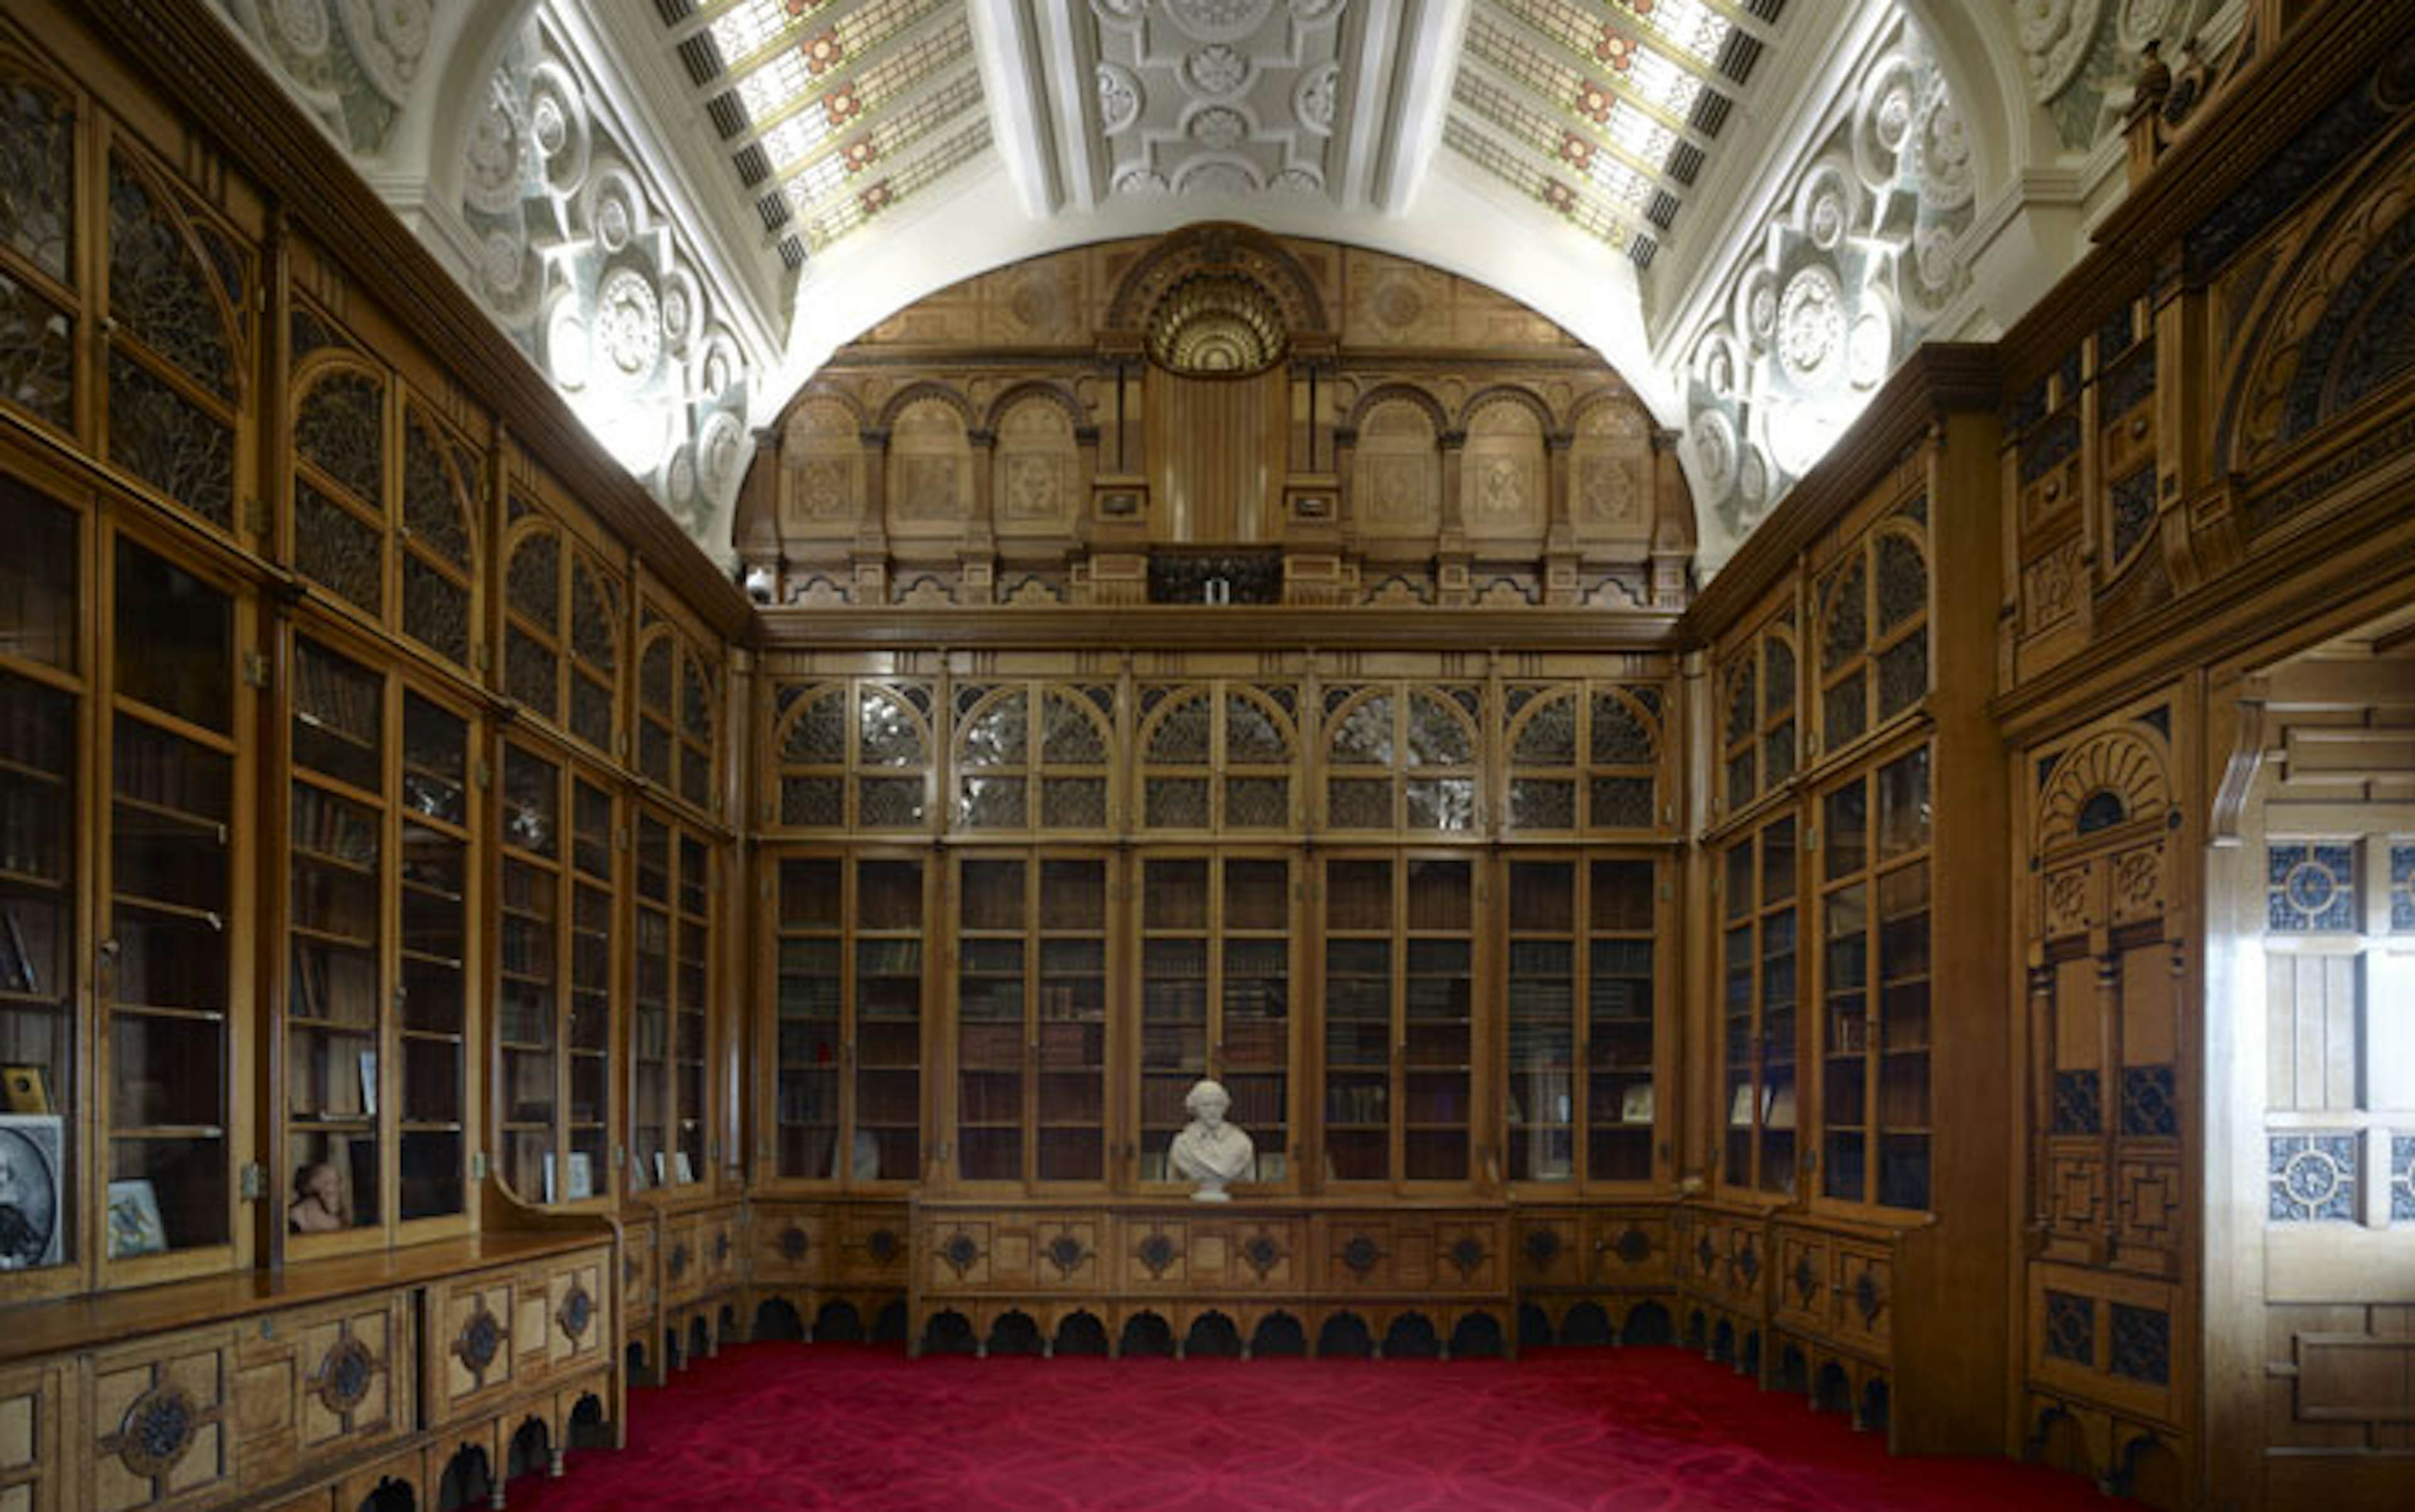 Unique Venues Birmingham (The Birmingham REP & The Library of Birmingham) - Shakespeare Memorial Room image 1